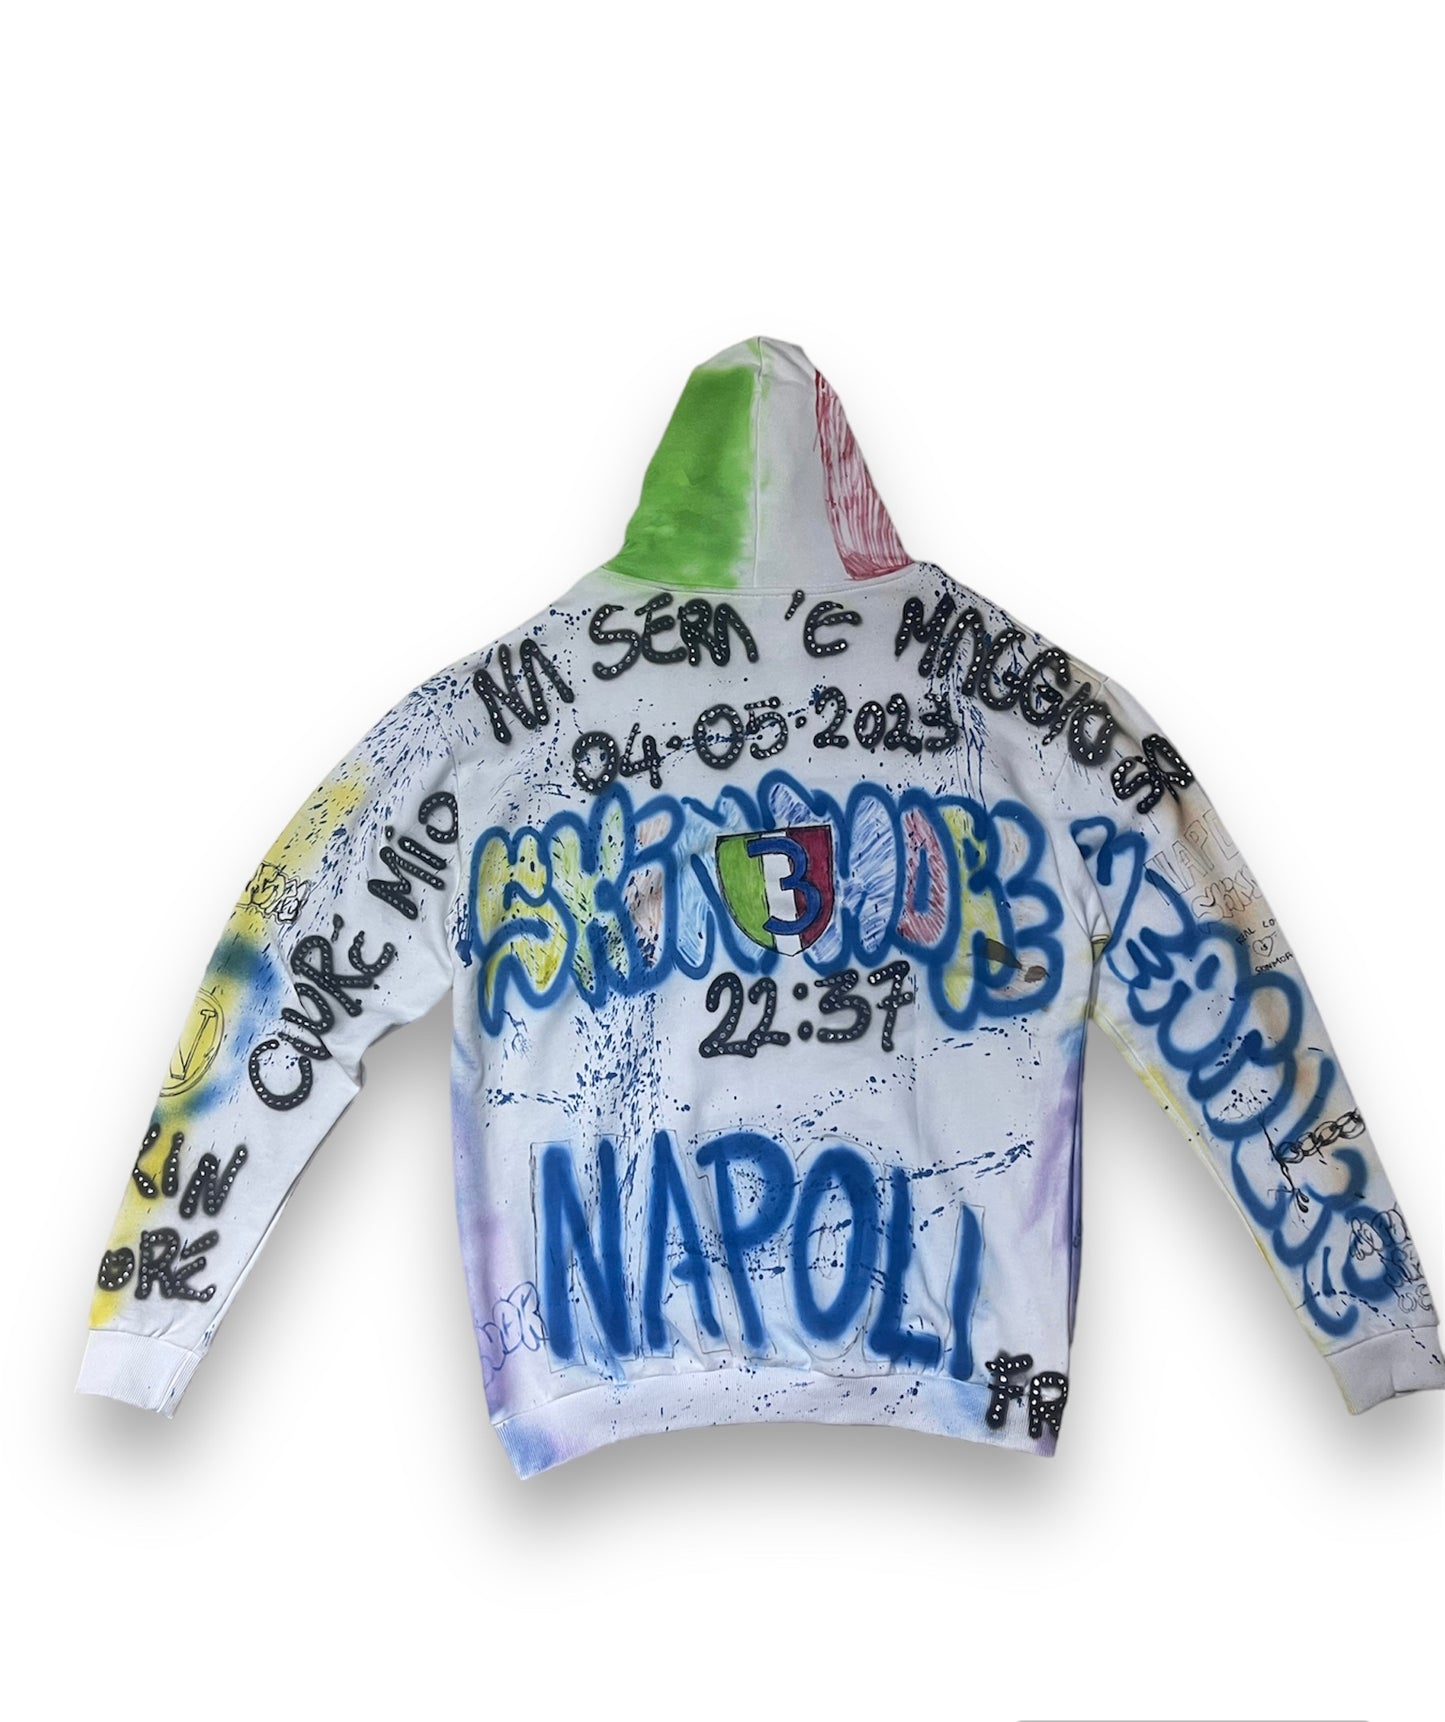 Napoli Scudetto sweatshirt